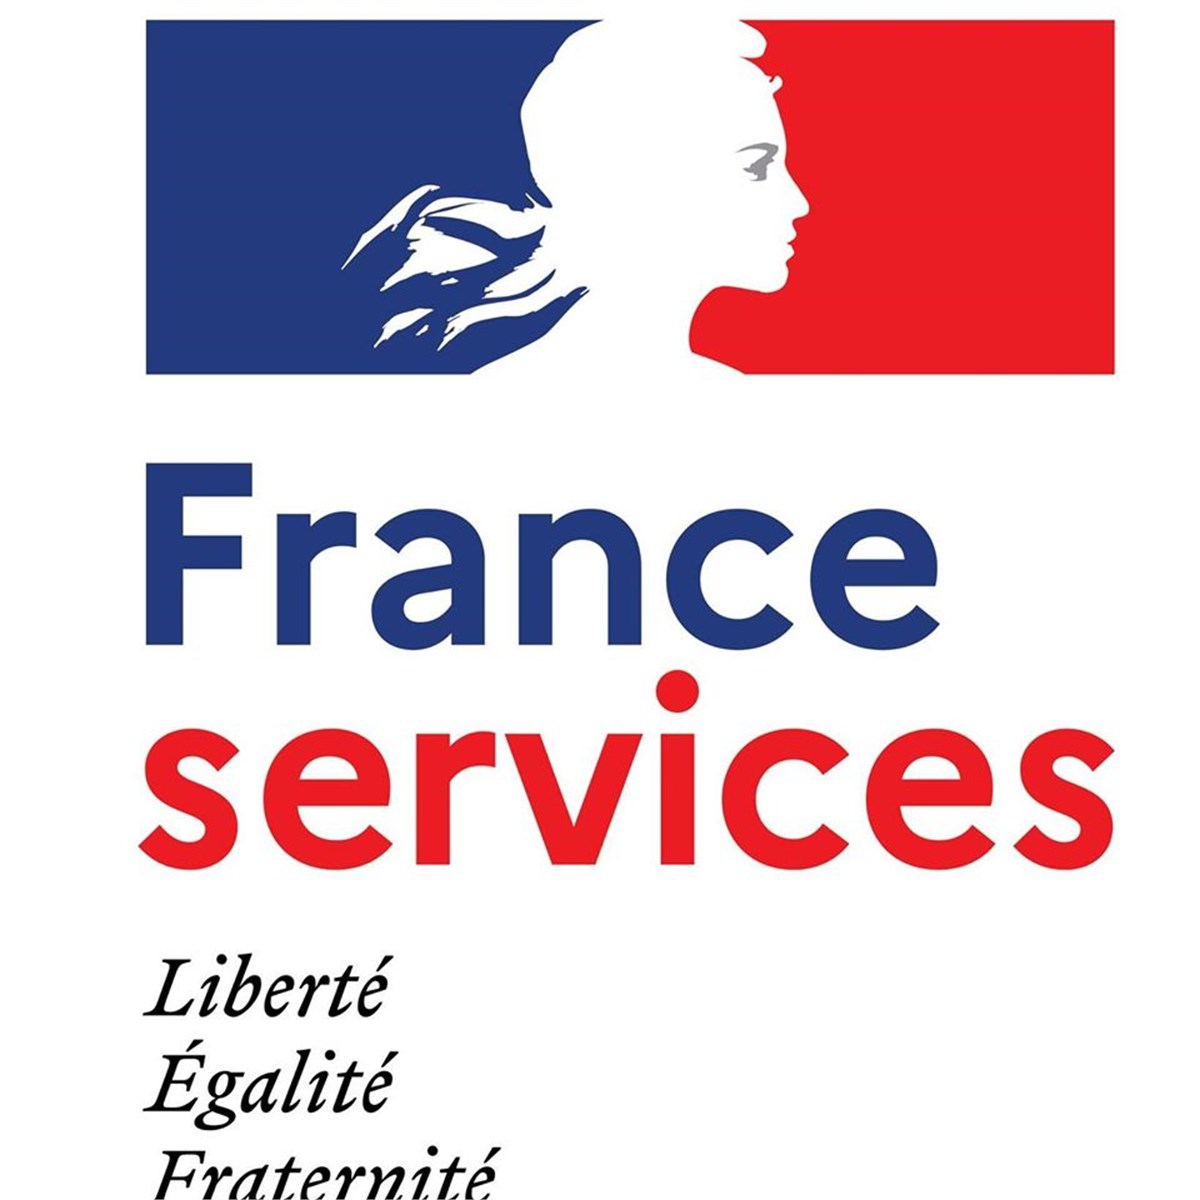 France service